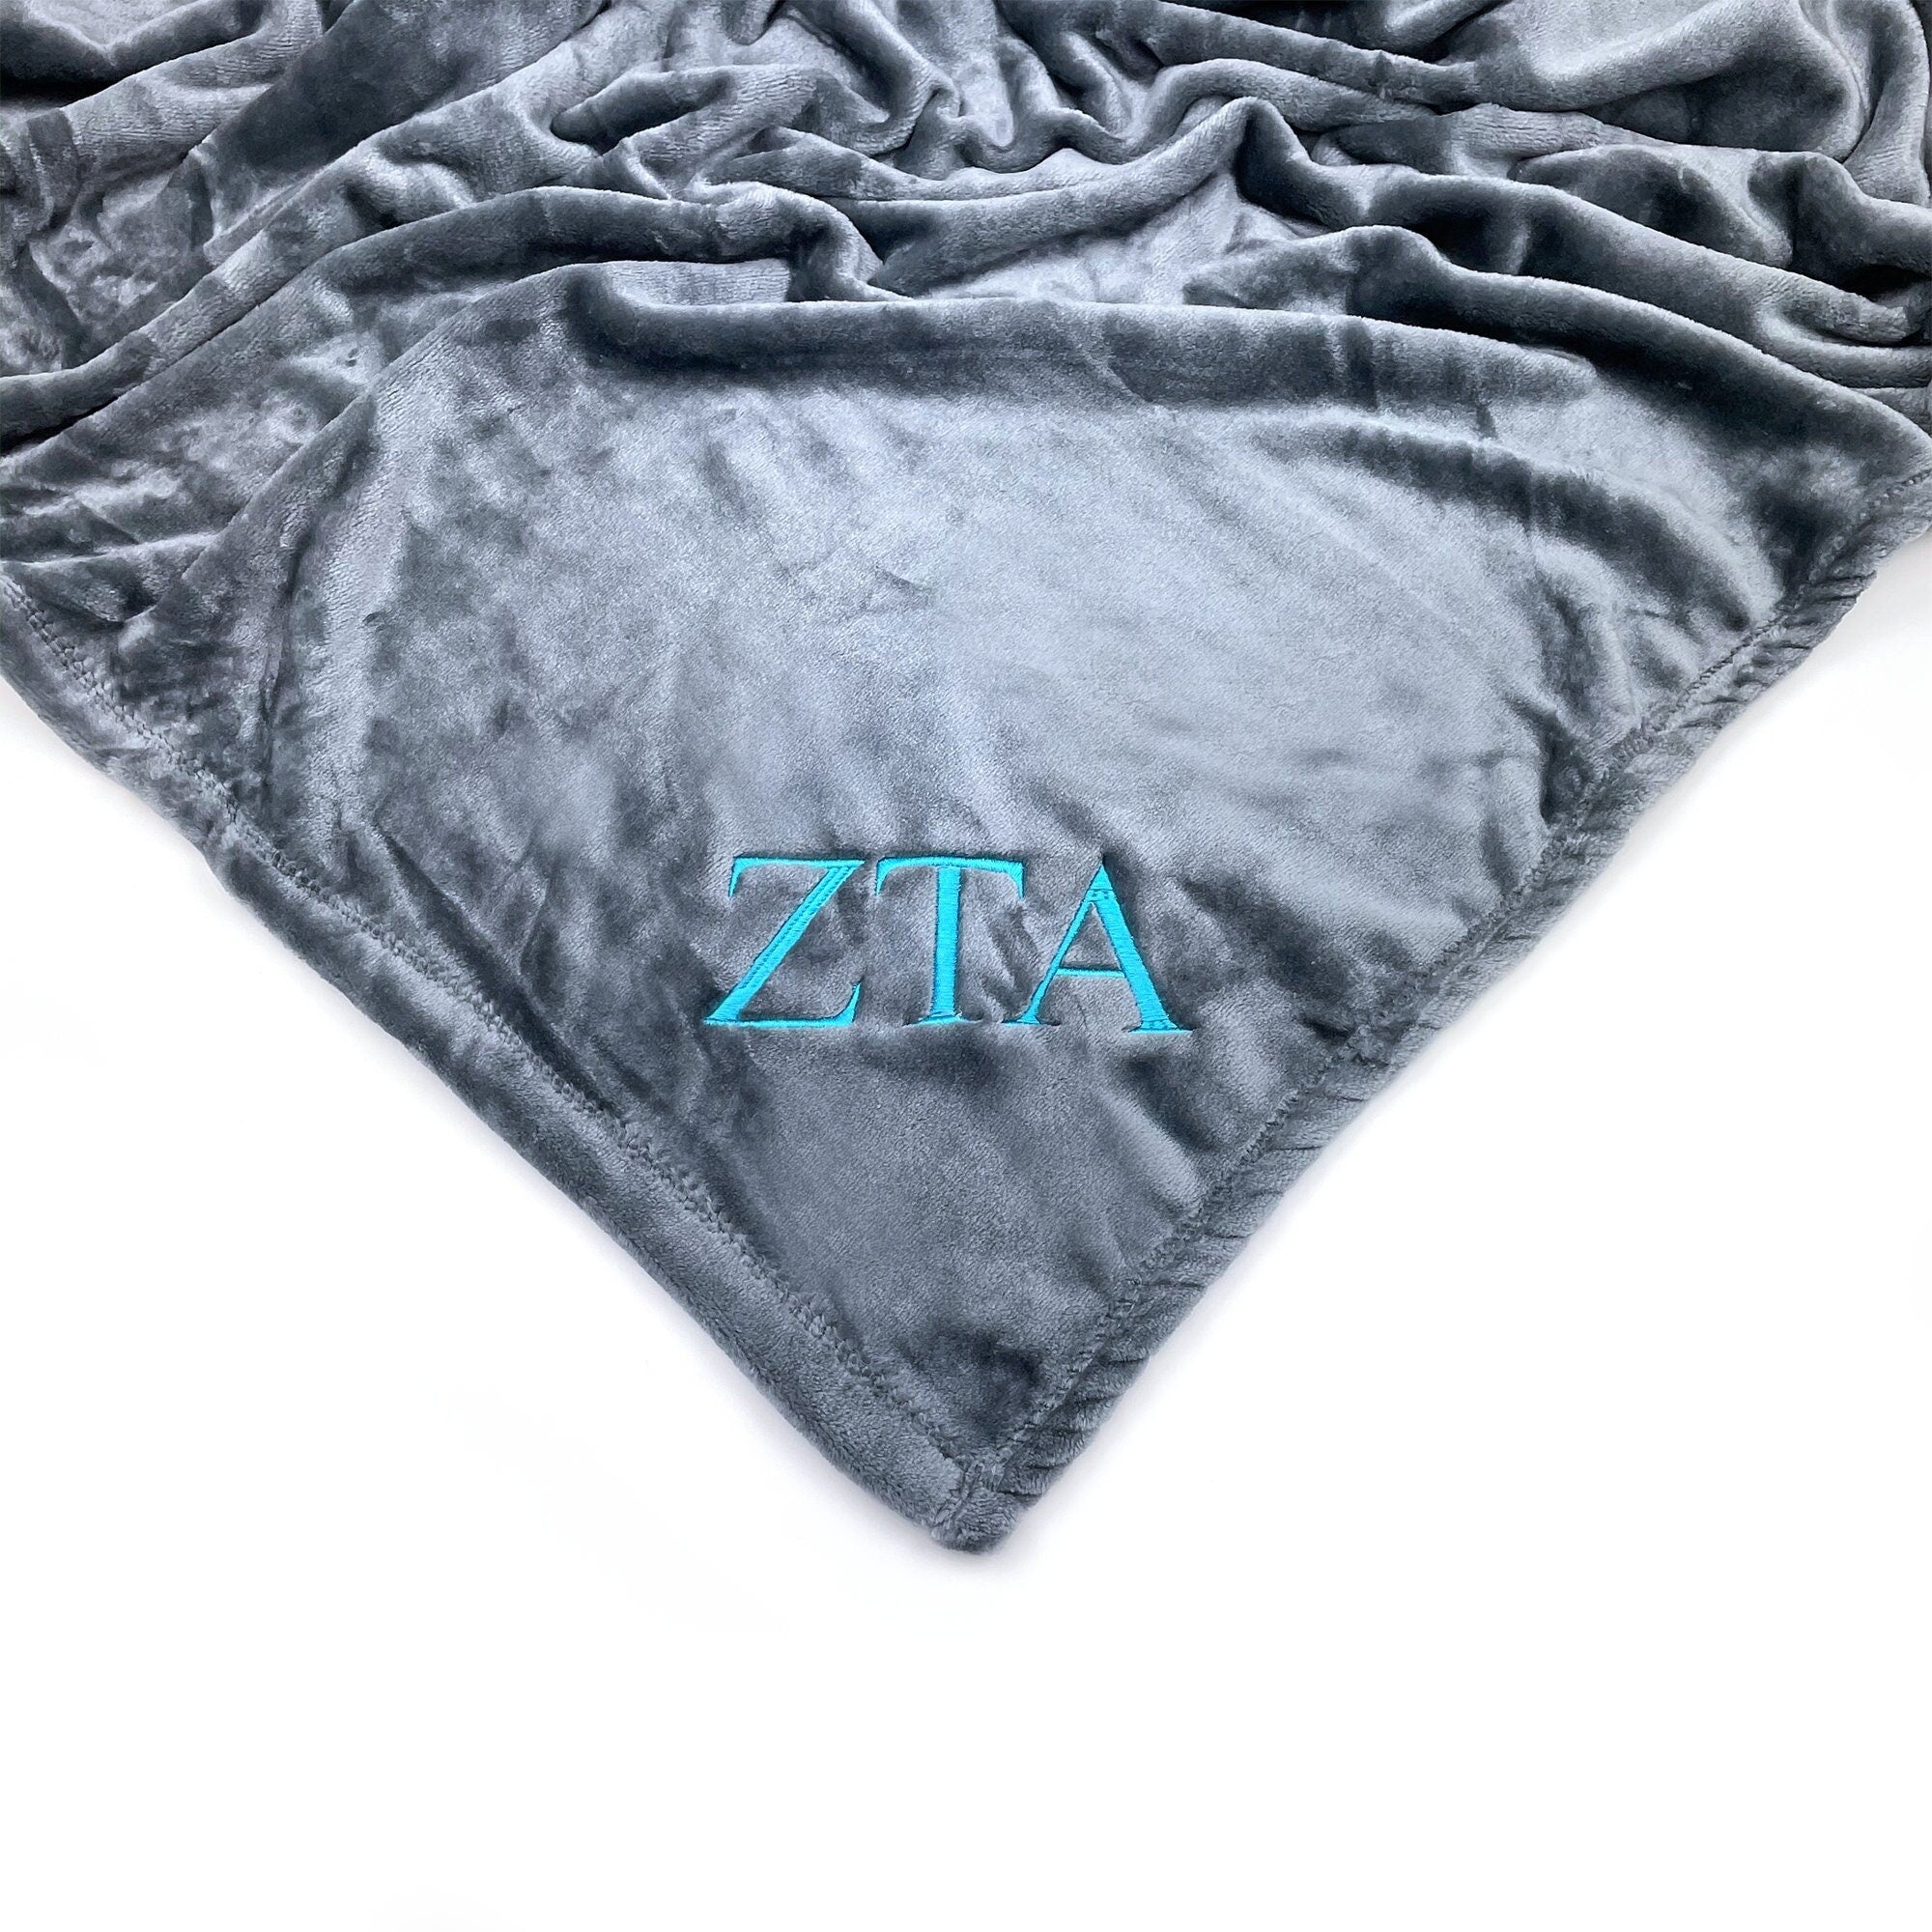 Zeta Tau Alpha Plush Throw Blanket - Grey/Teal - Go Greek Chic